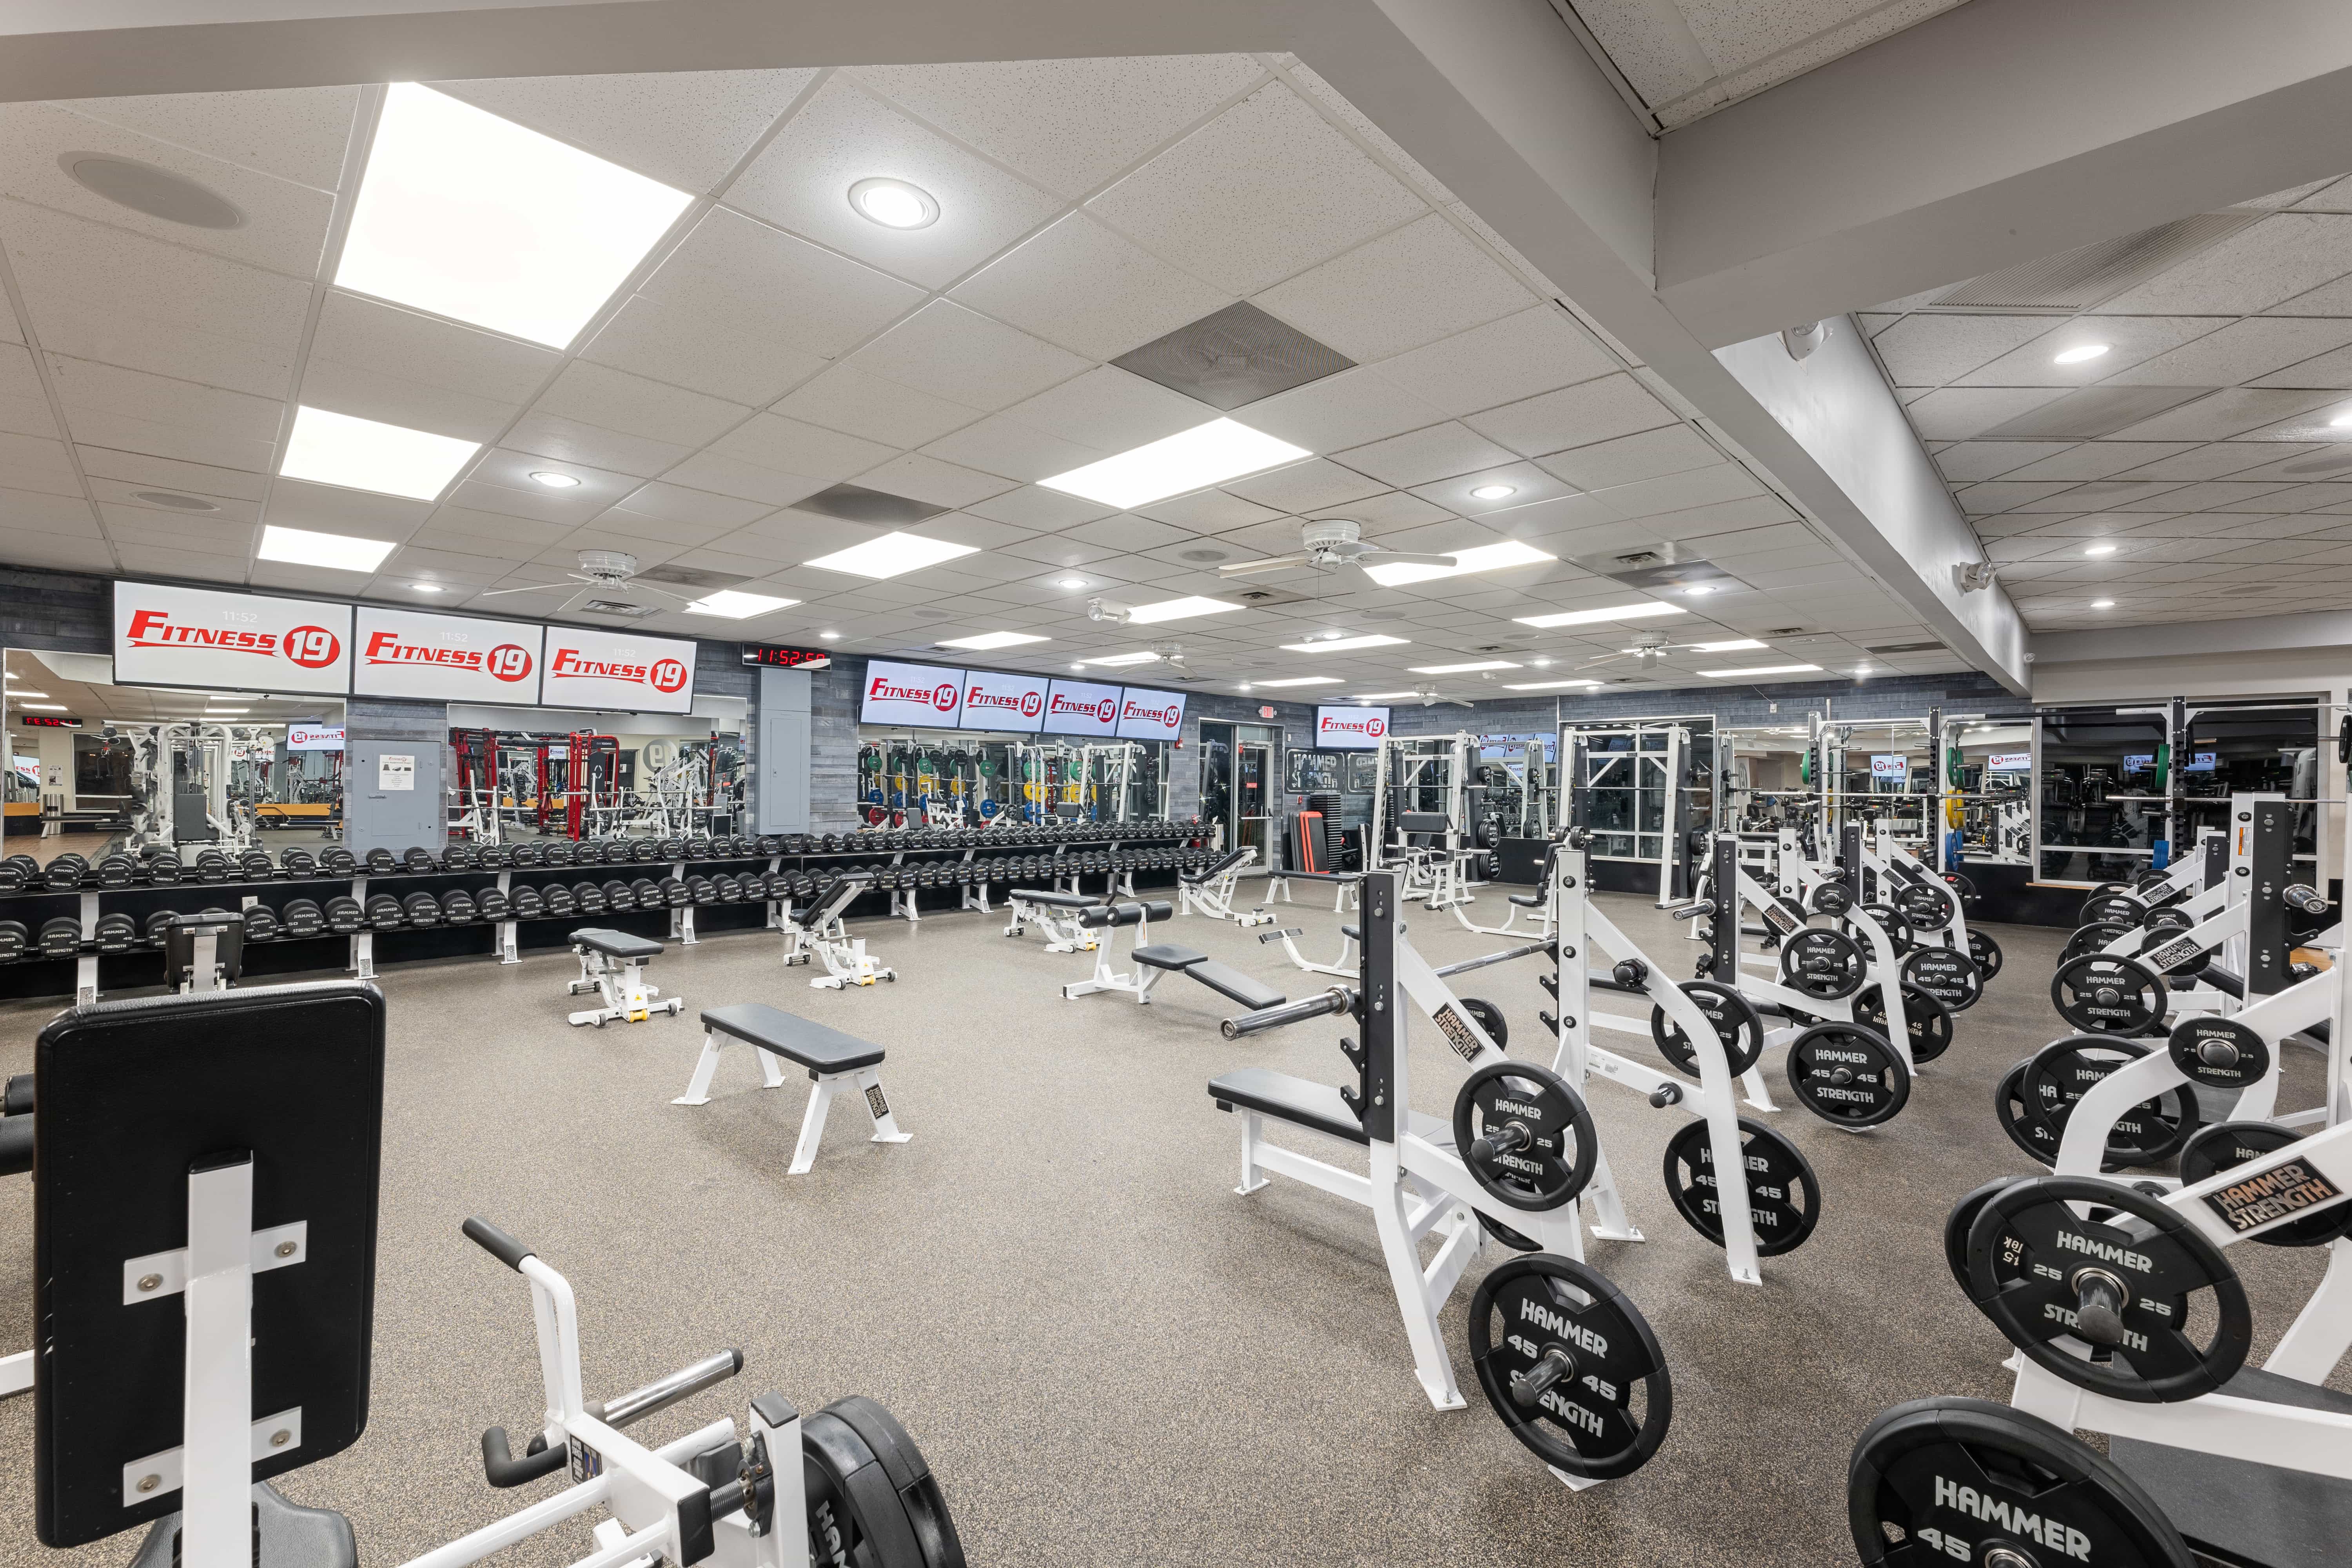 Gym Fitness Center, Health Club Midland MI